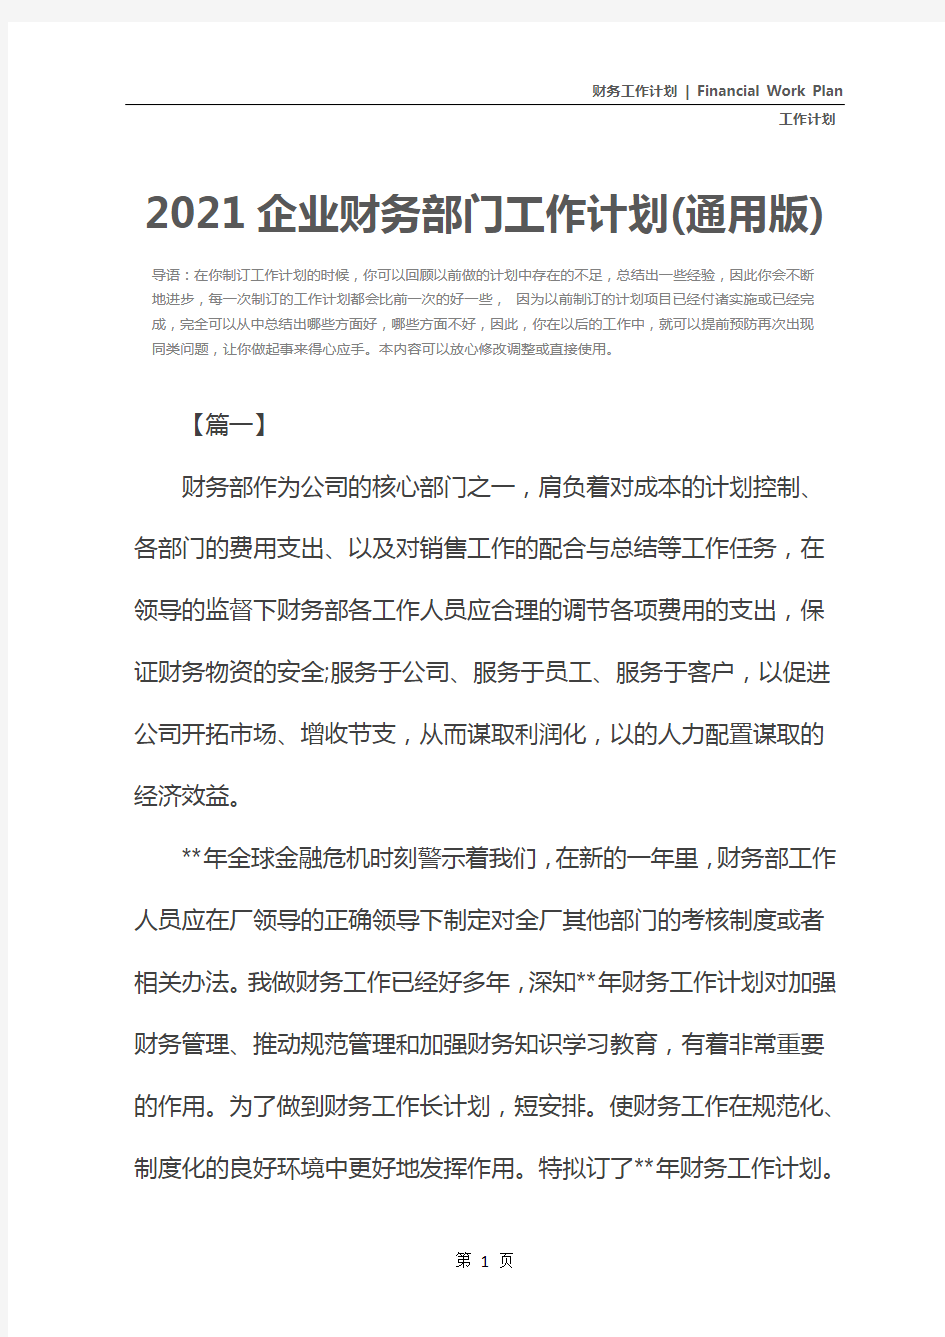 2021企业财务部门工作计划(通用版)